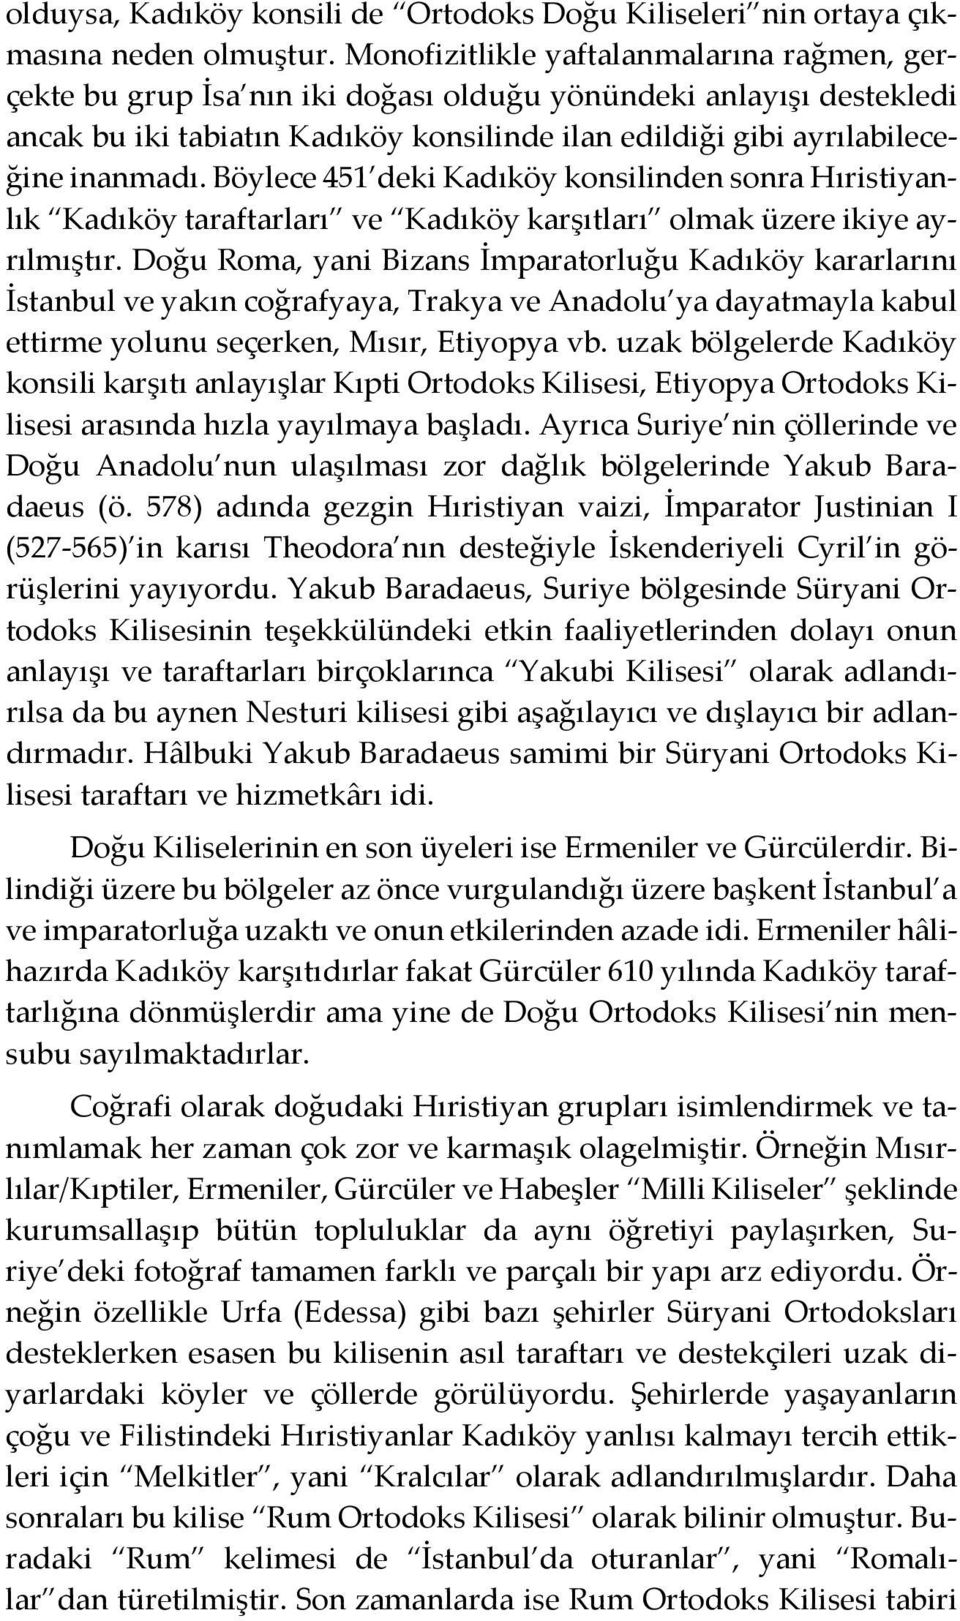 Böylece 451 deki Kadıköy konsilinden sonra Hıristiyanlık Kadıköy taraftarları ve Kadıköy karşıtları olmak üzere ikiye ayrılmıştır.